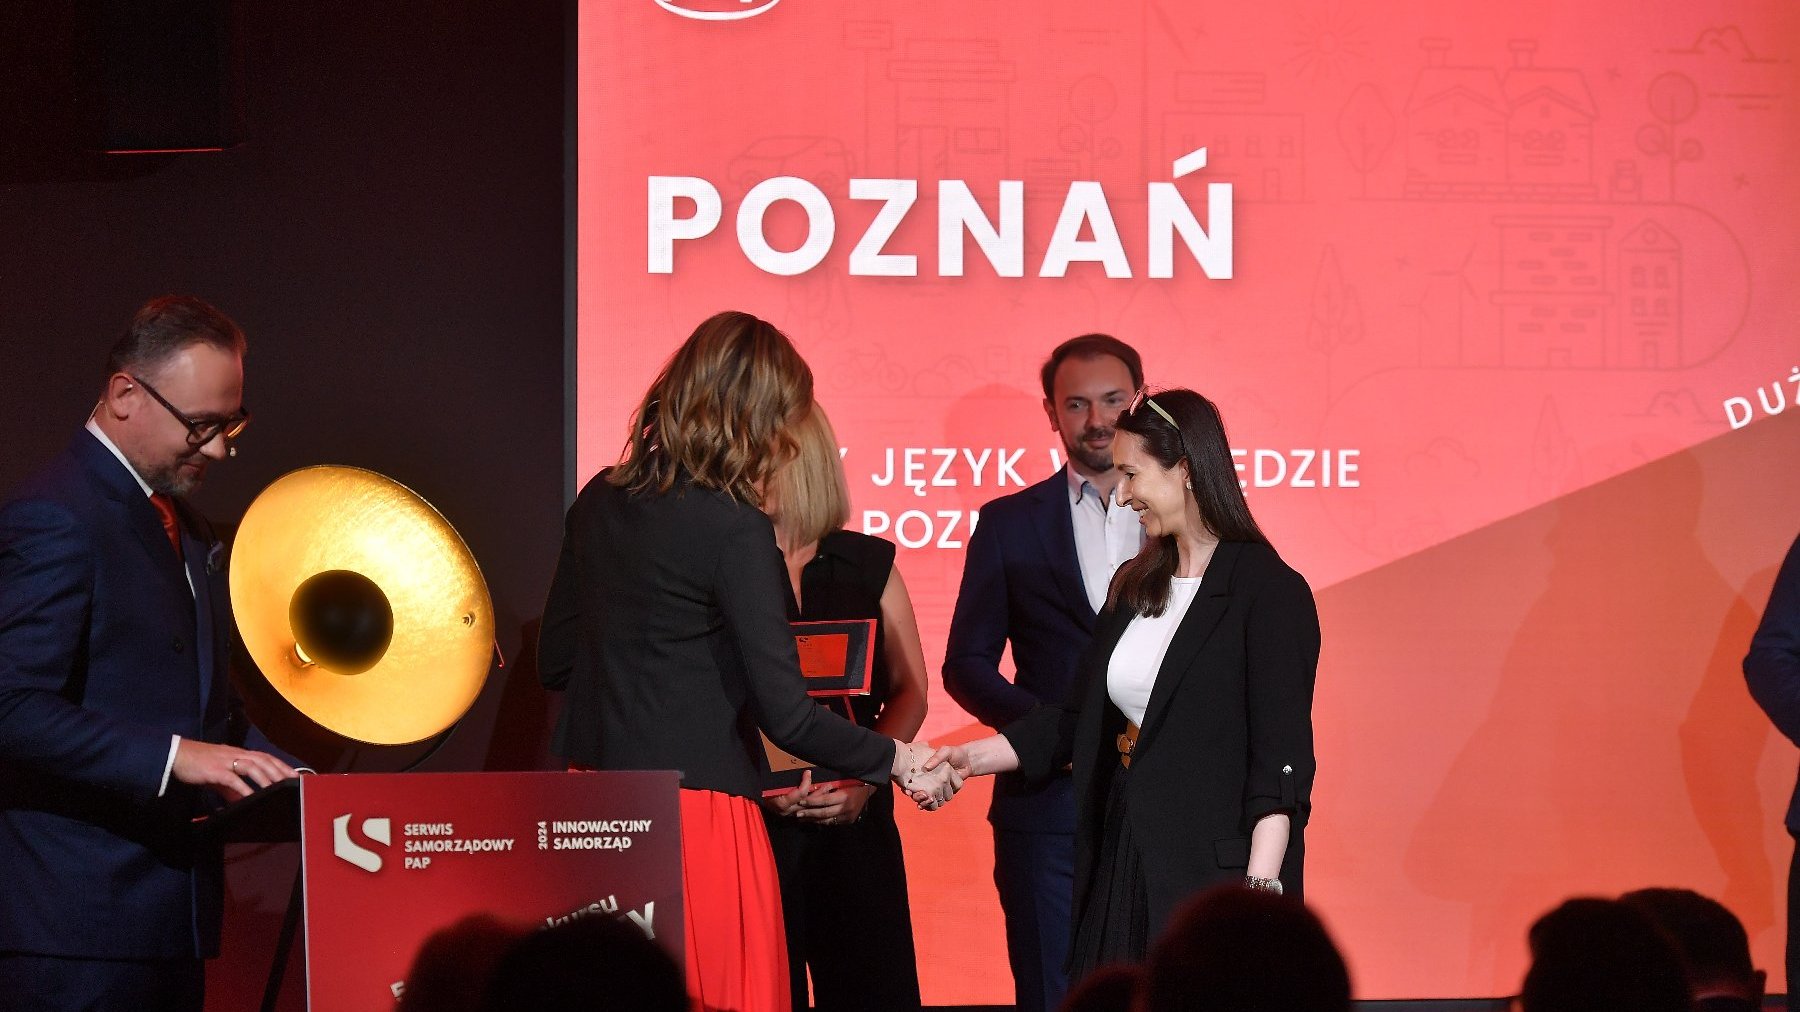 Na pierwszym planie dwie kobiety uściskują dłonie. Jedna z nich wręcza drugiej nagrodę. Za nimi stoją 3 osoby. W tle duży czerwony plakat, na którym wyświetla się napis "Poznań".